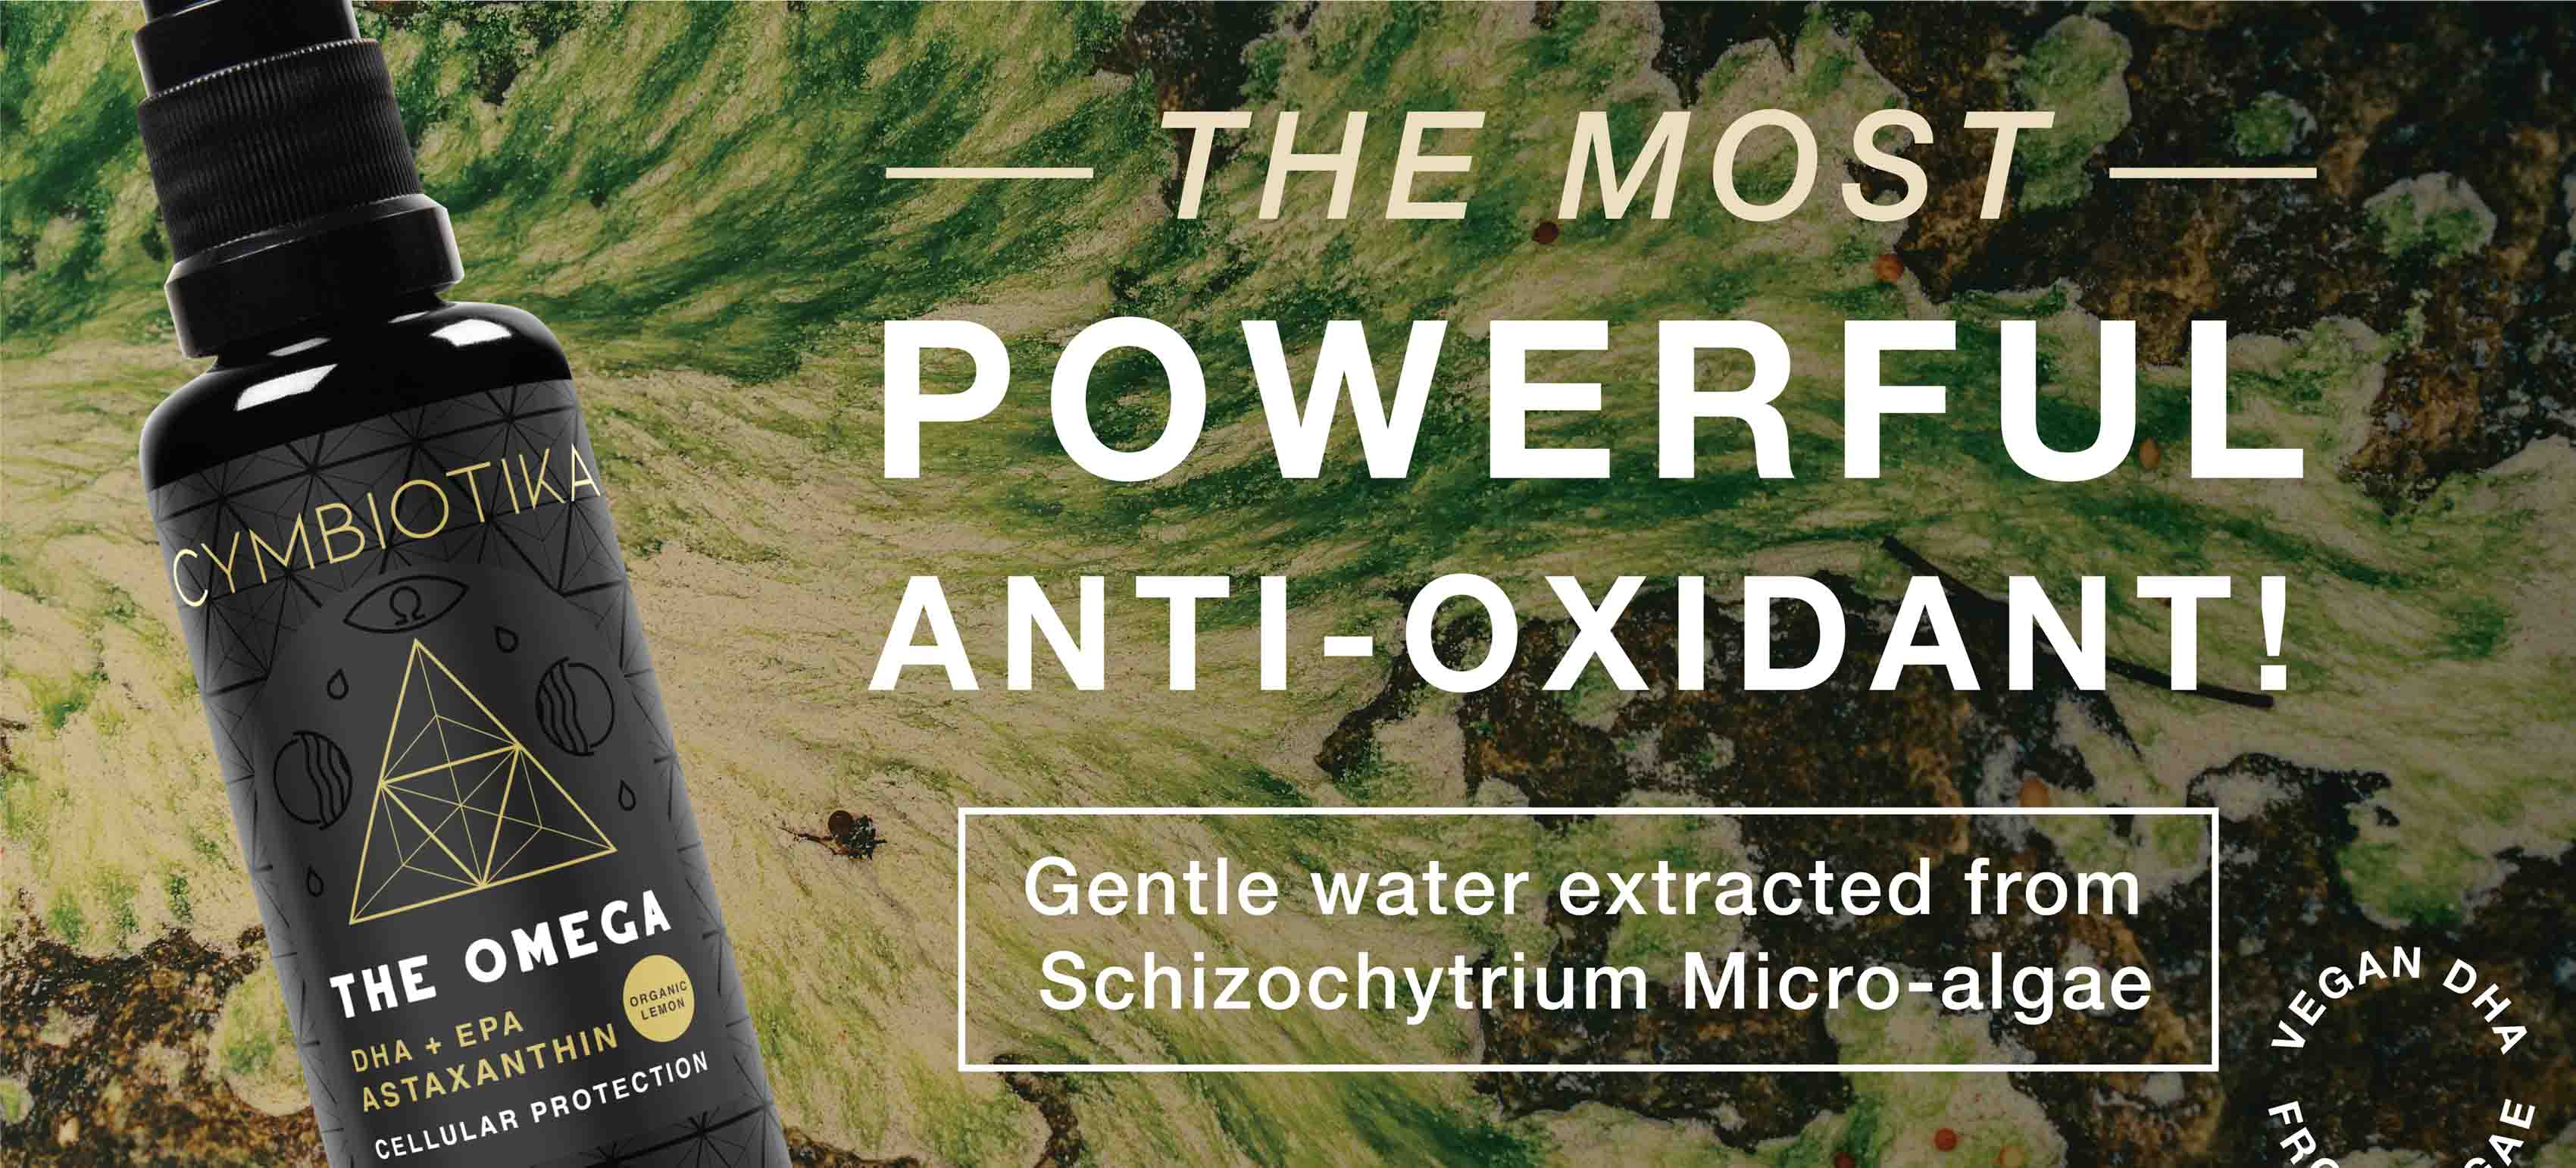 El antioxidante más potente con agua suave extraída de la microalga Schizochytrium.